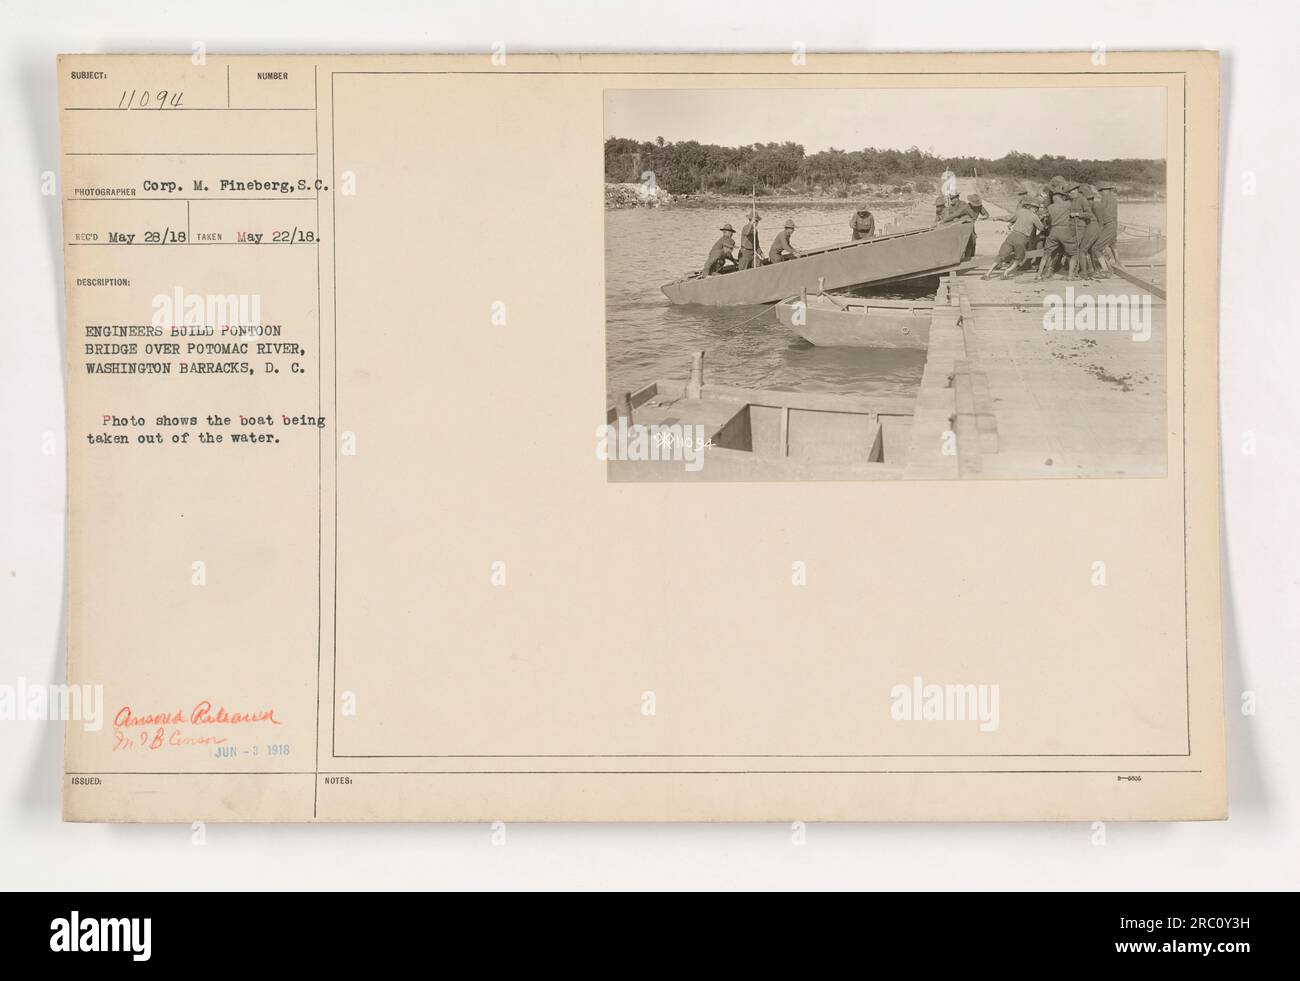 Ingenieure bauen eine Pontonbrücke über den Potomac River in Washington Barracks, D.C. Auf dem Foto wird der Moment festgehalten, in dem ein Boot aus dem Wasser gebracht wird. Das Foto stammt vom 22. Mai 1918 und wurde von Corp. M. Pineberg aufgenommen. Ausgestellt am 3. Juni 1918 mit der Warenbezeichnung 111-SC-11094. Stockfoto